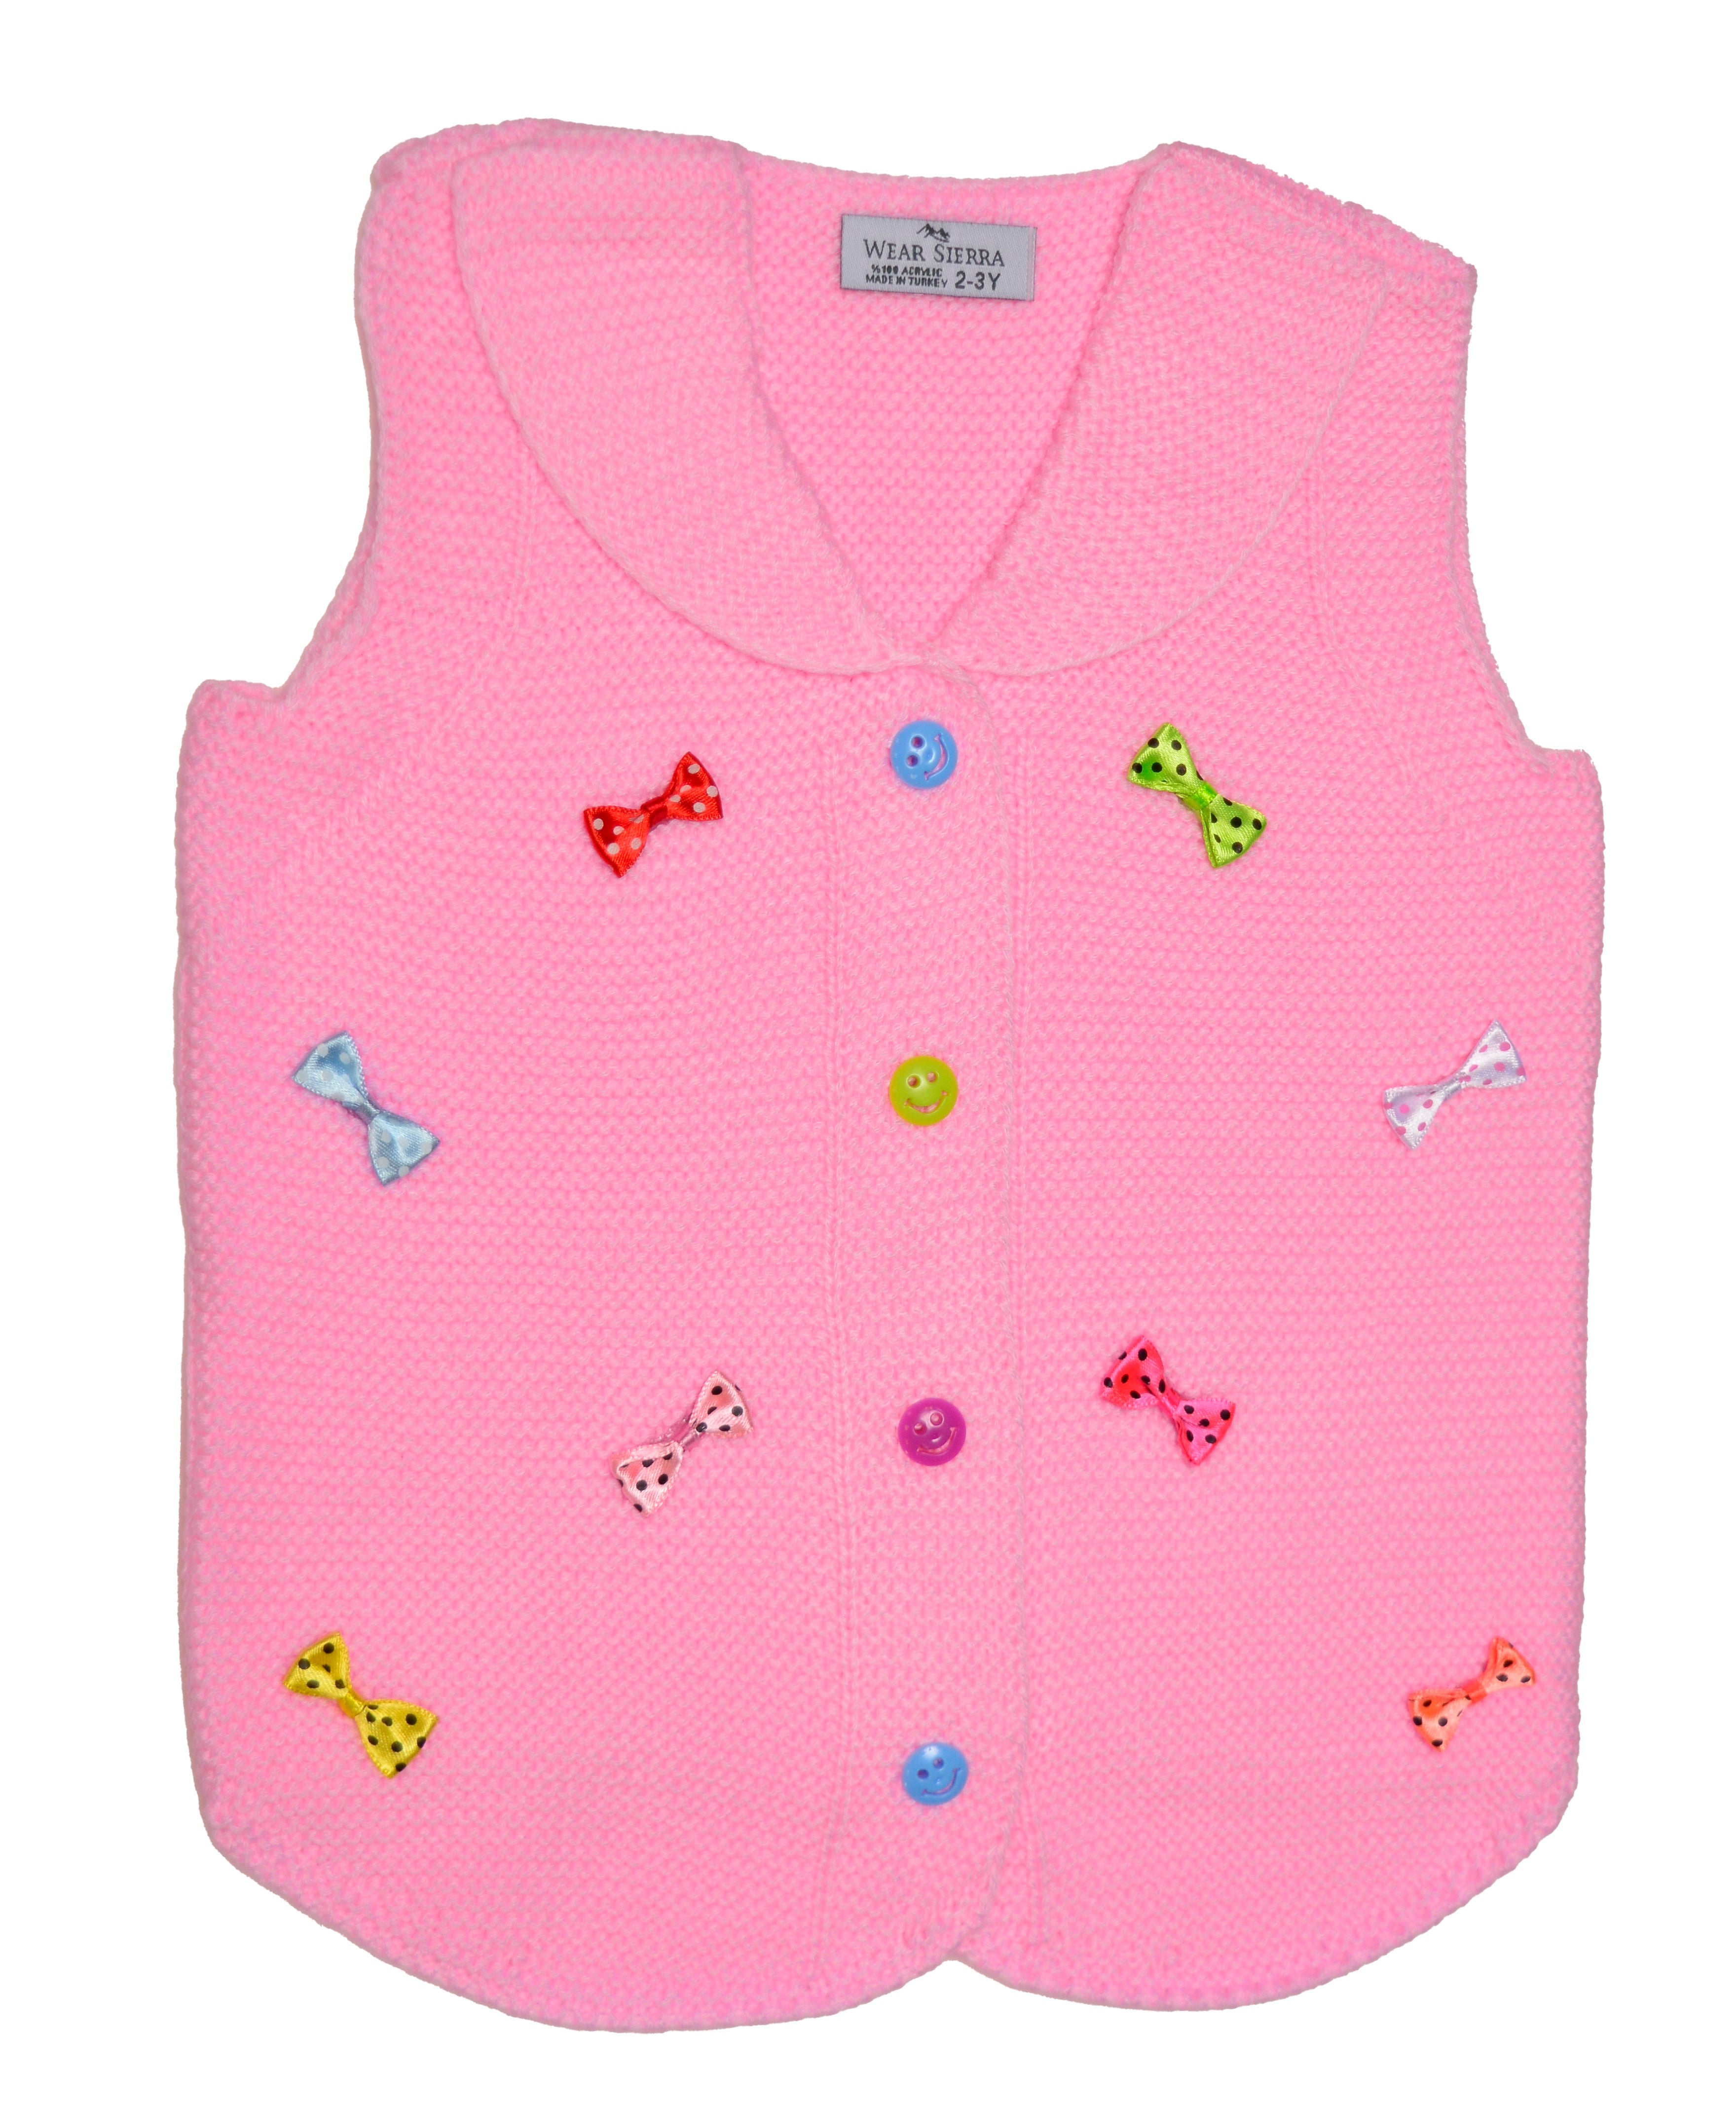 Wear Sierra Vest Bows Sweaters For Toddlers And Girls - Wear Sierra